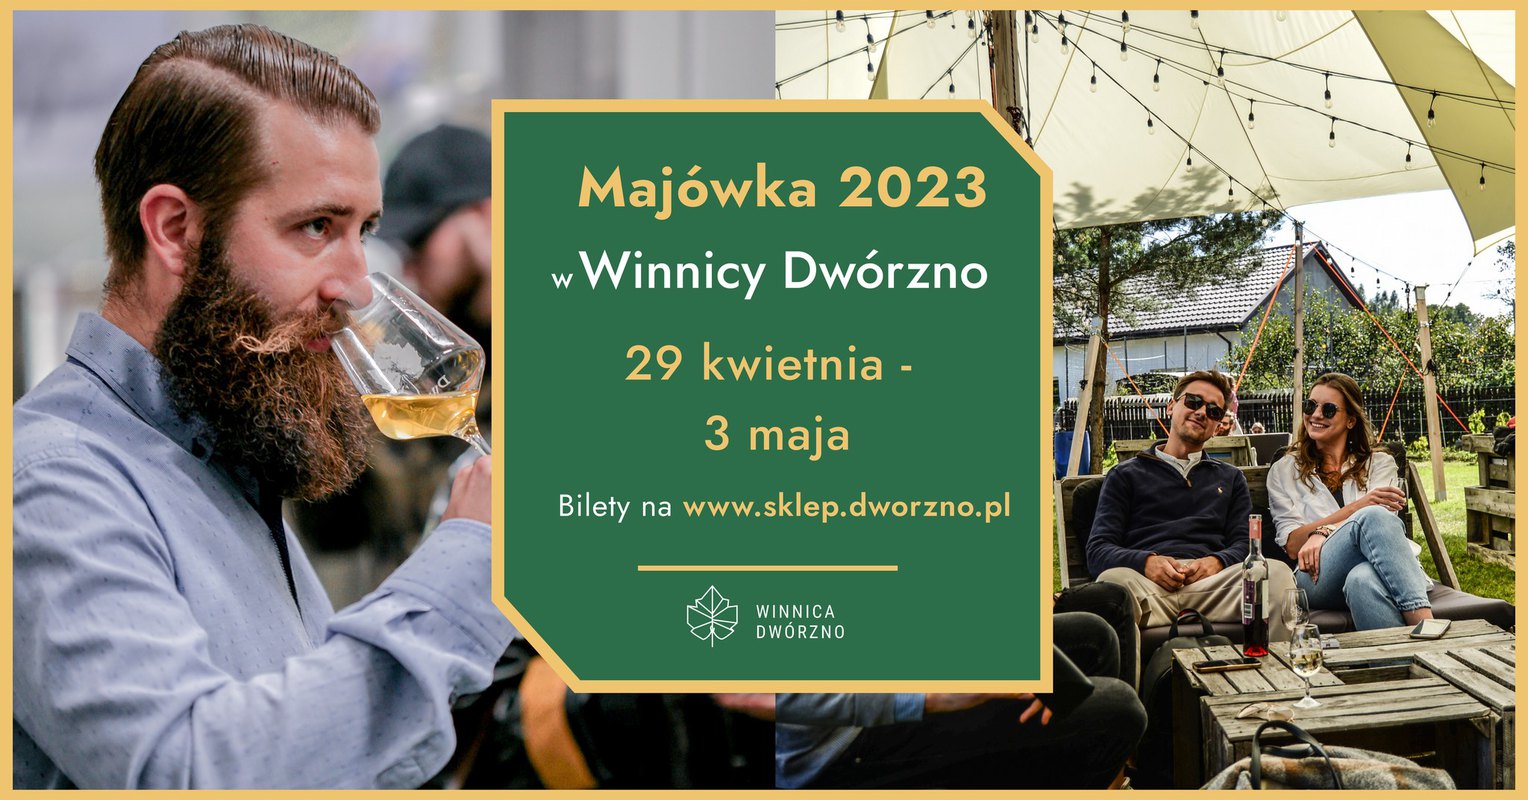 Majówka 2023 w Winnicy Dwórzno 29.04-3.05 - zwiedzanie, degustacja, piknik 40 km od WWA